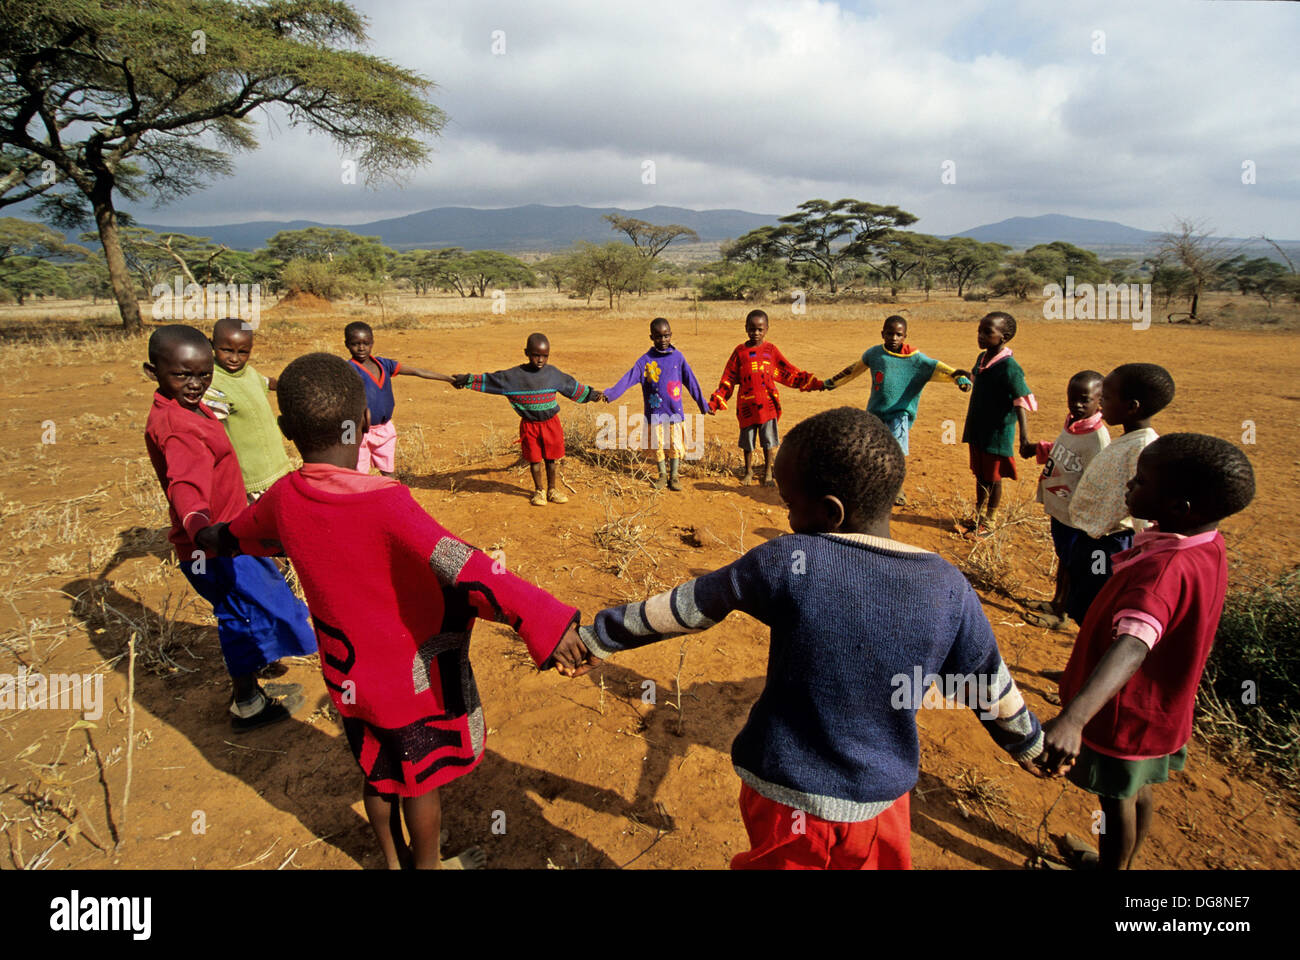 Los colegiales jugando dance,escuela bush,alrededor de Namanga,Kenia,Africa Foto de stock